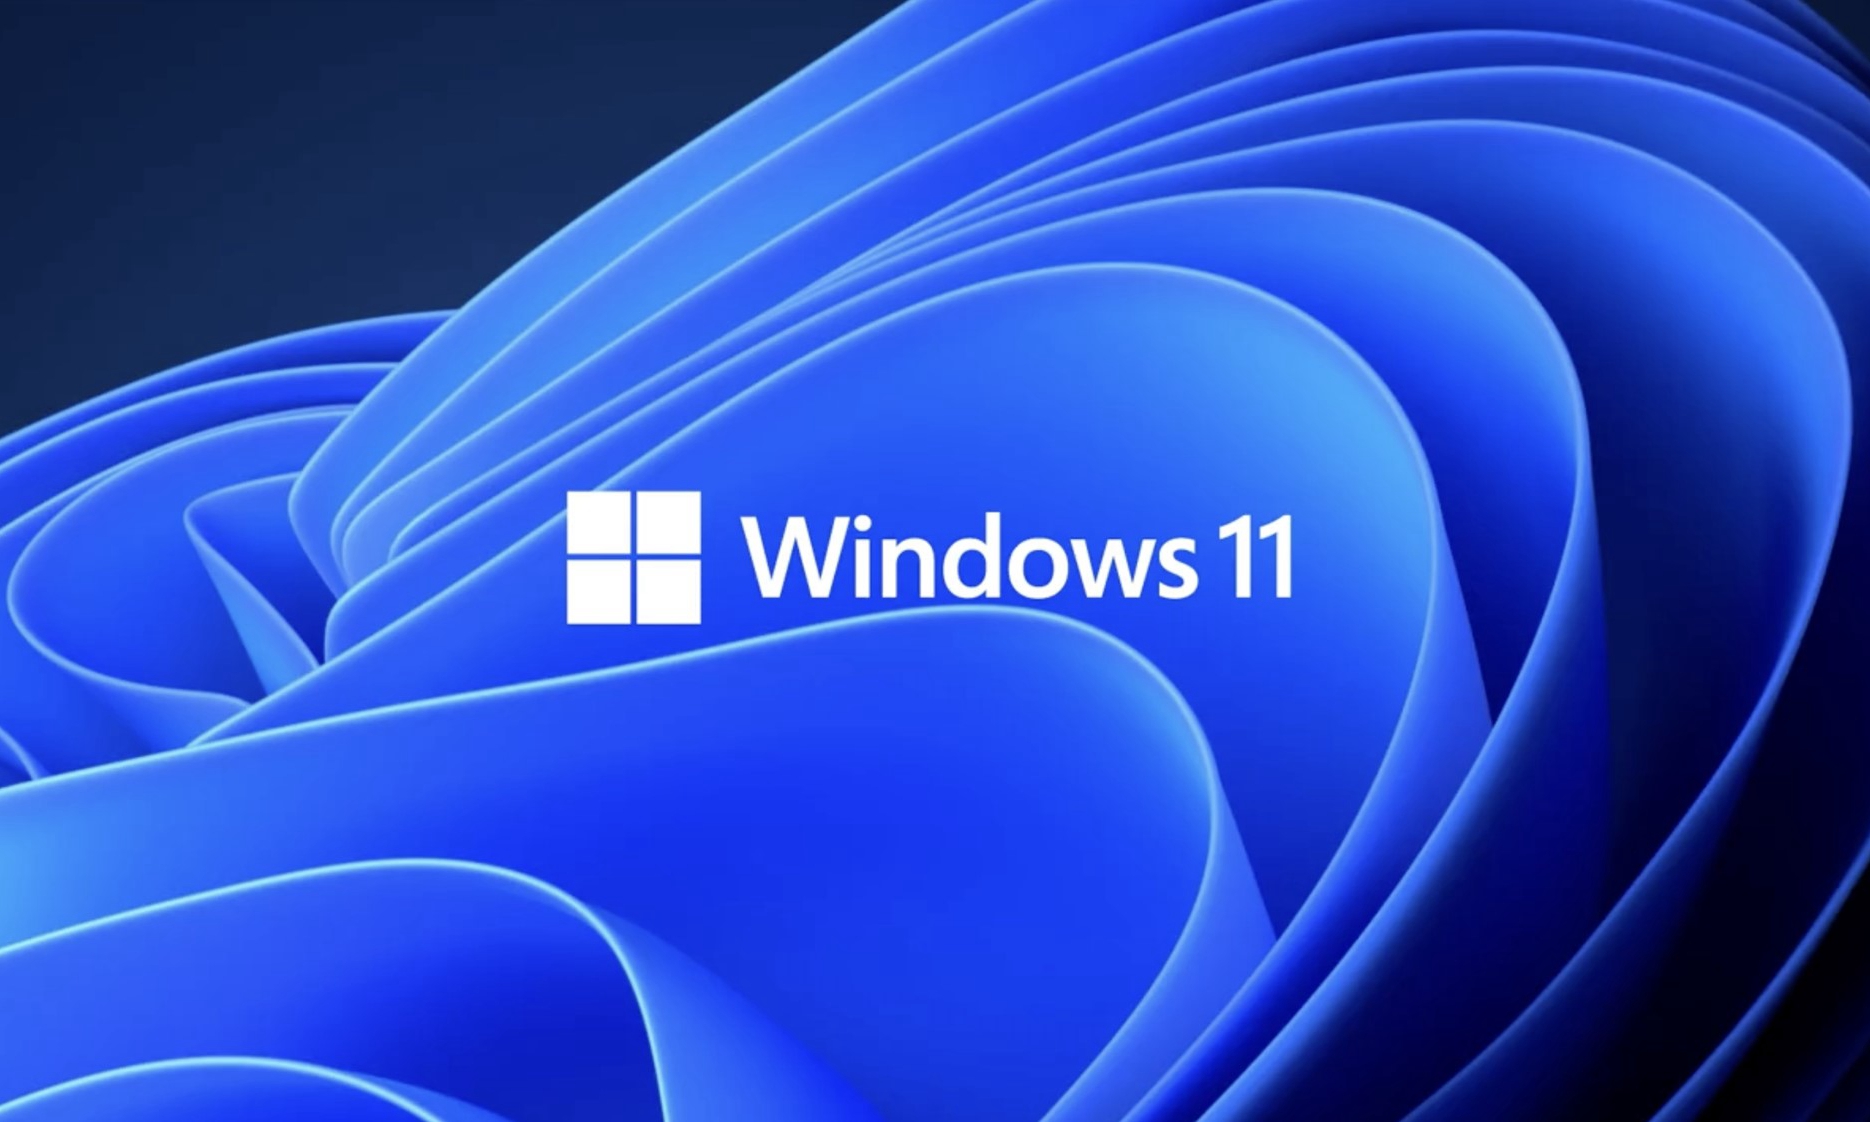 微软正式公布全新 Windows 11 操作系统